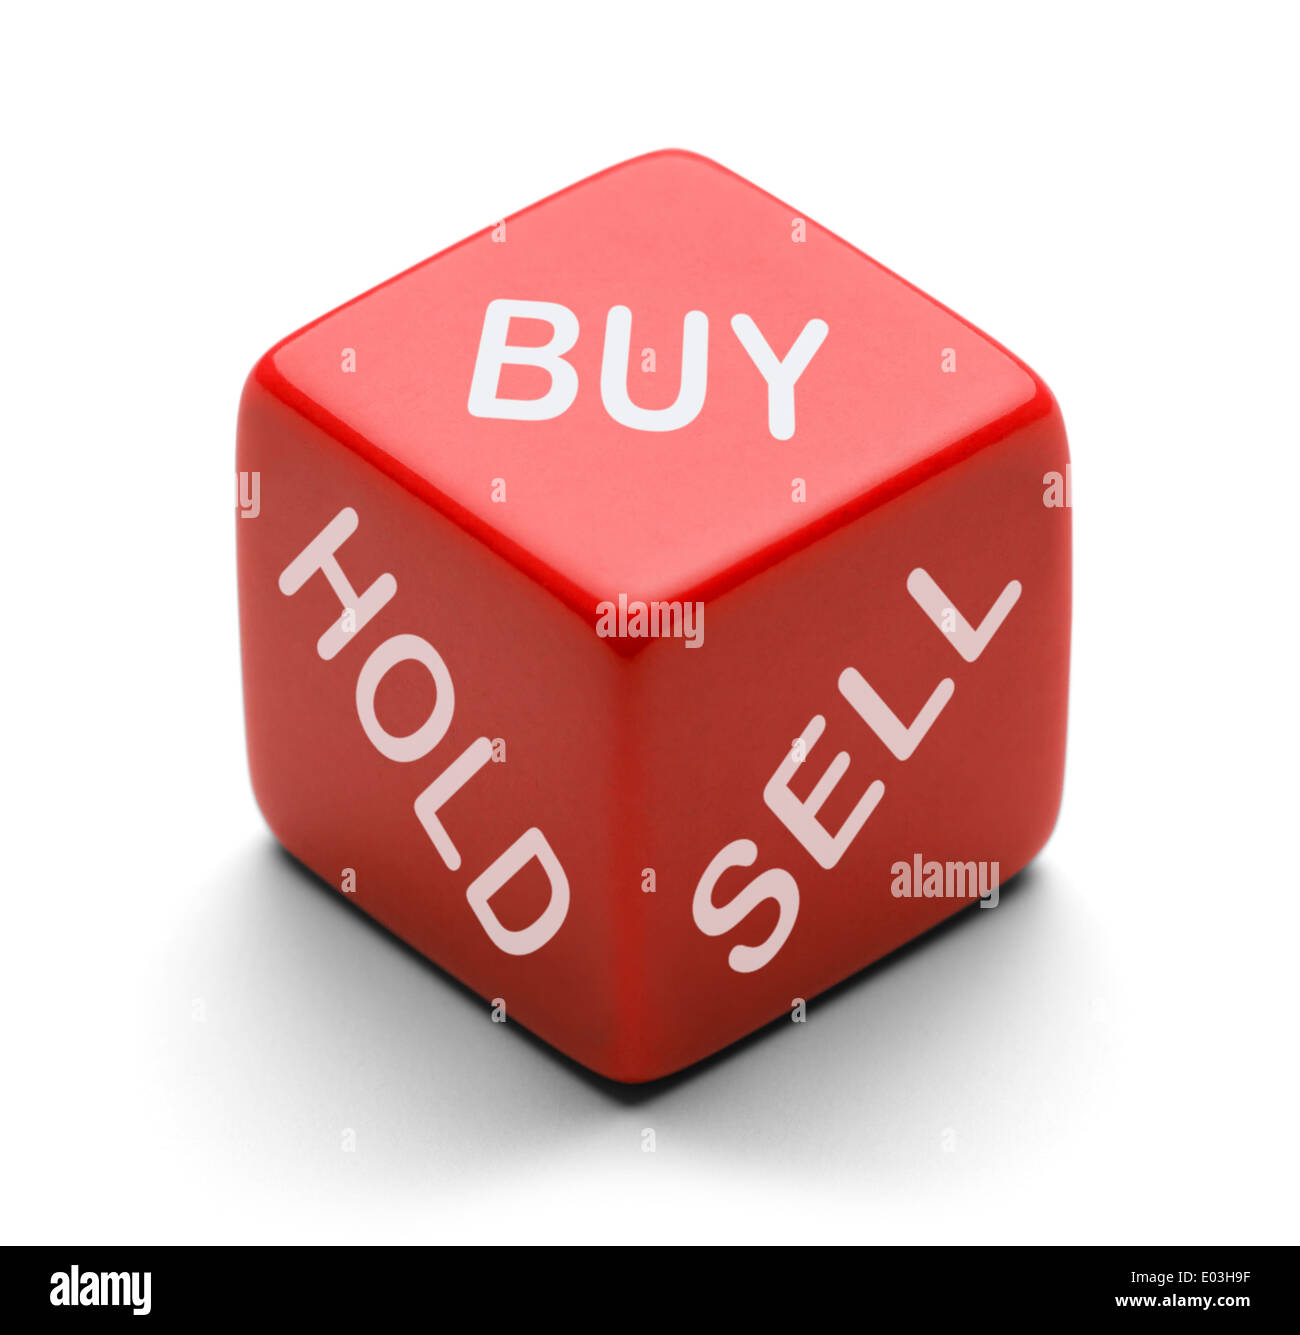 Roten Würfel mit halten Sie kaufen und verkaufen auf es isoliert auf weißem Hintergrund. Für die Entscheidungsfindung Börsenmakler. Stockfoto